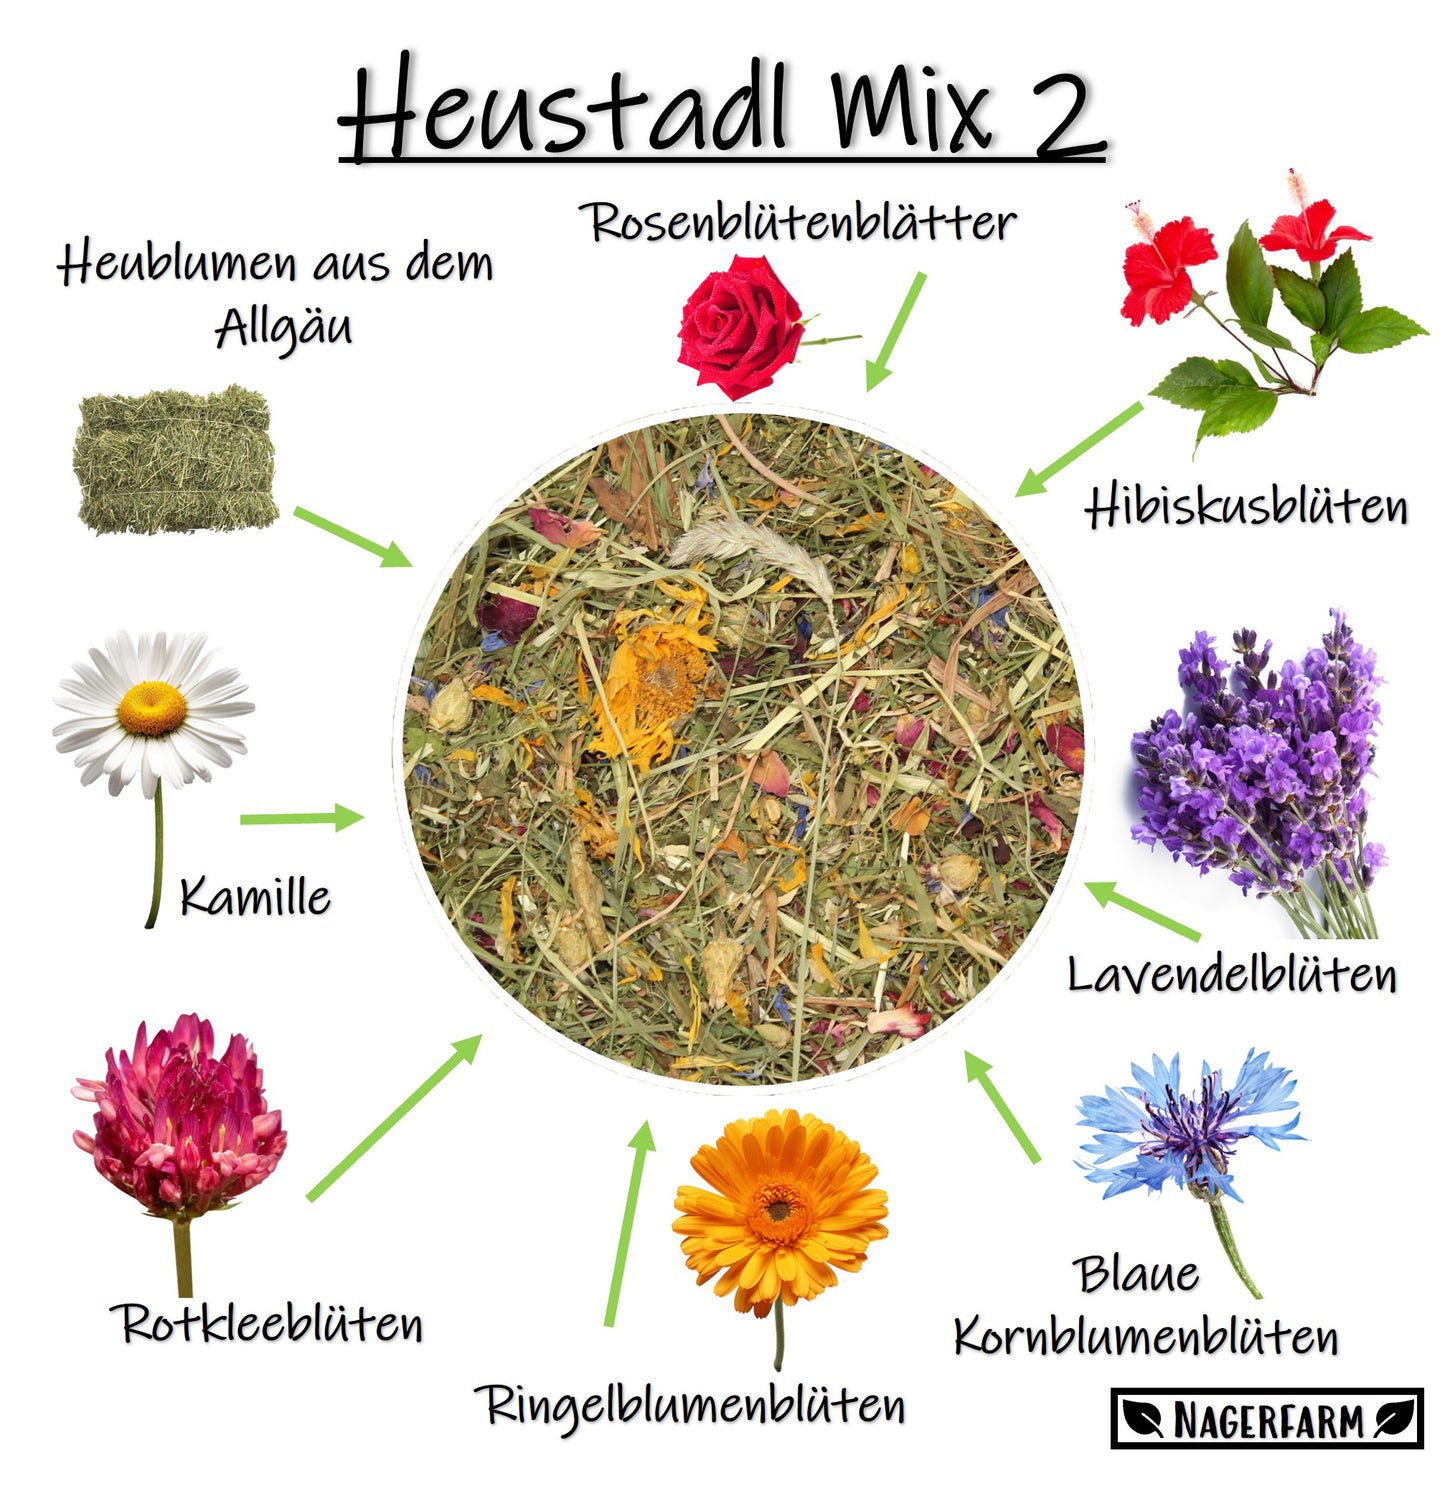 Heustadl Mix 2